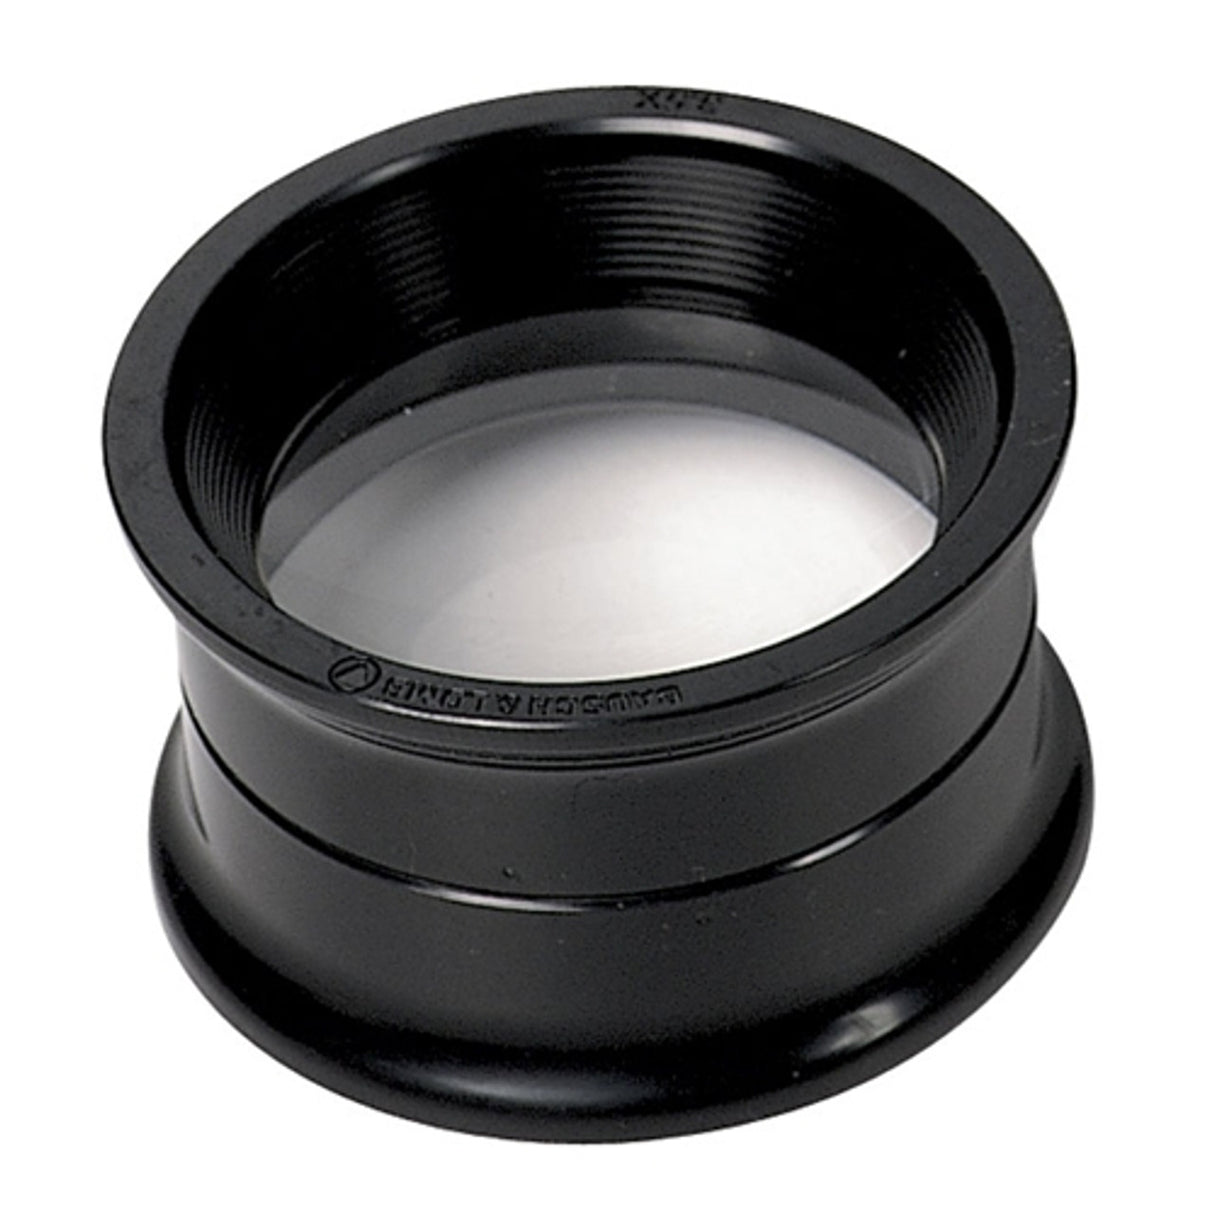 Bausch & Lomb® Lens Magnifier, 3.5X, 40mm Lens